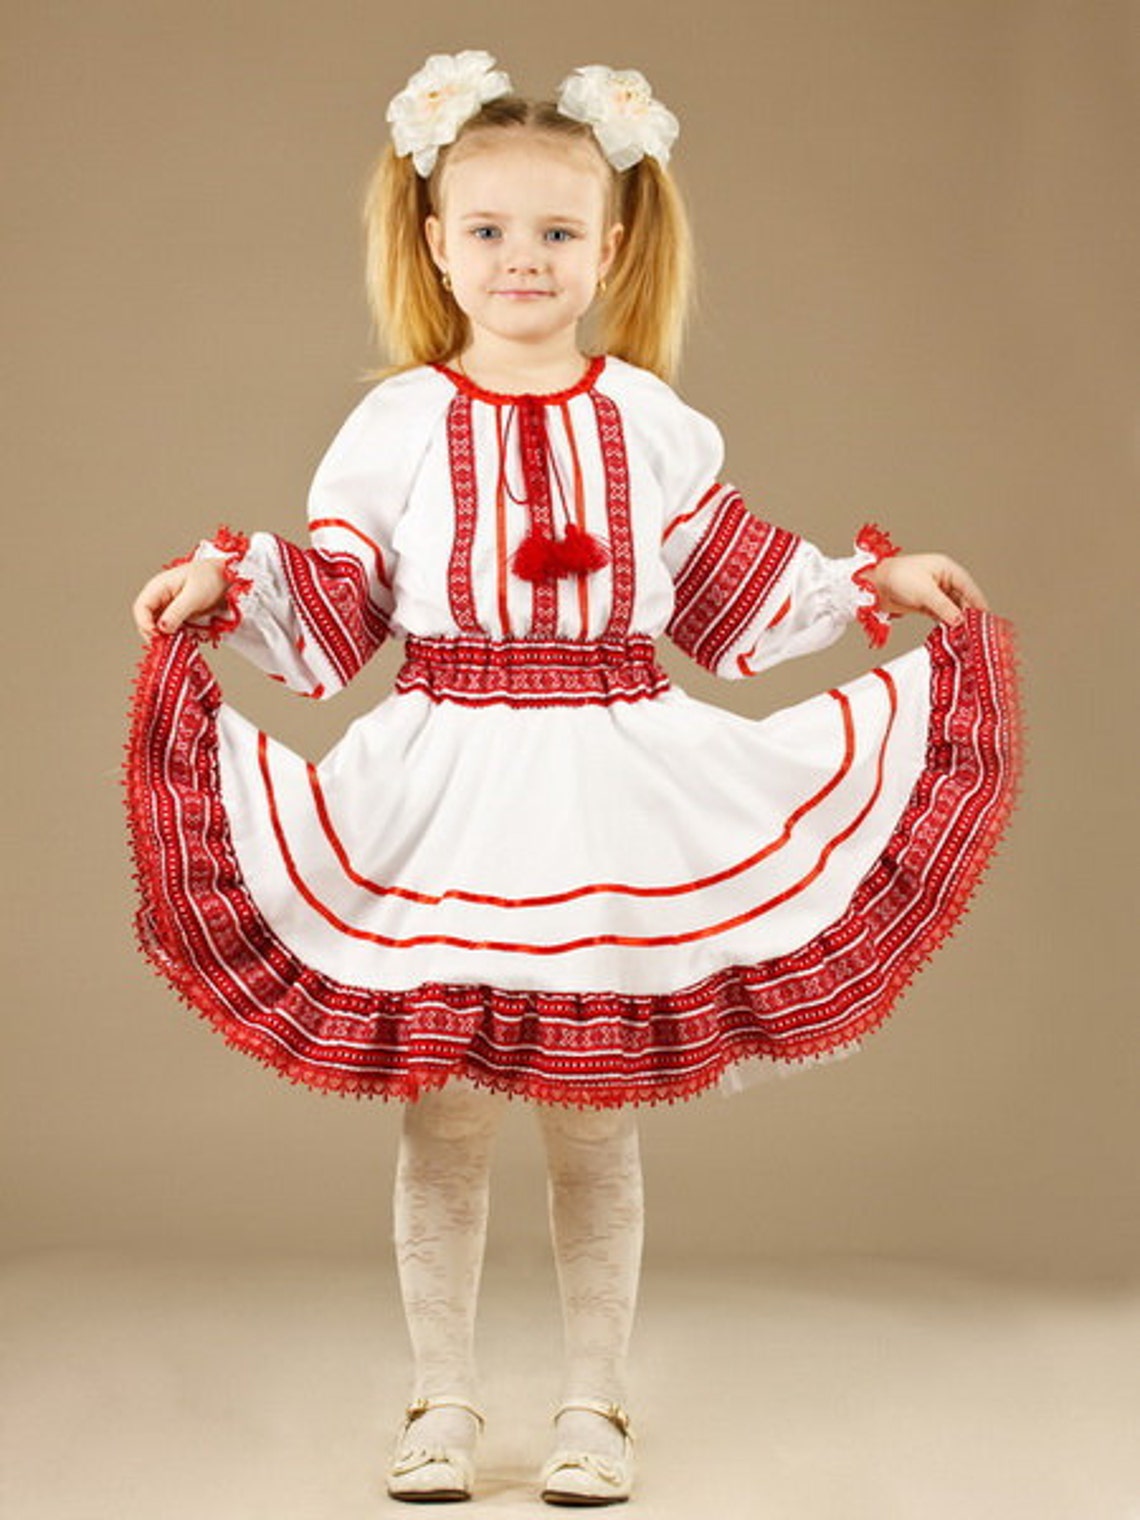 Ukrainian Children's Dress embroidery. For girls. | Etsy